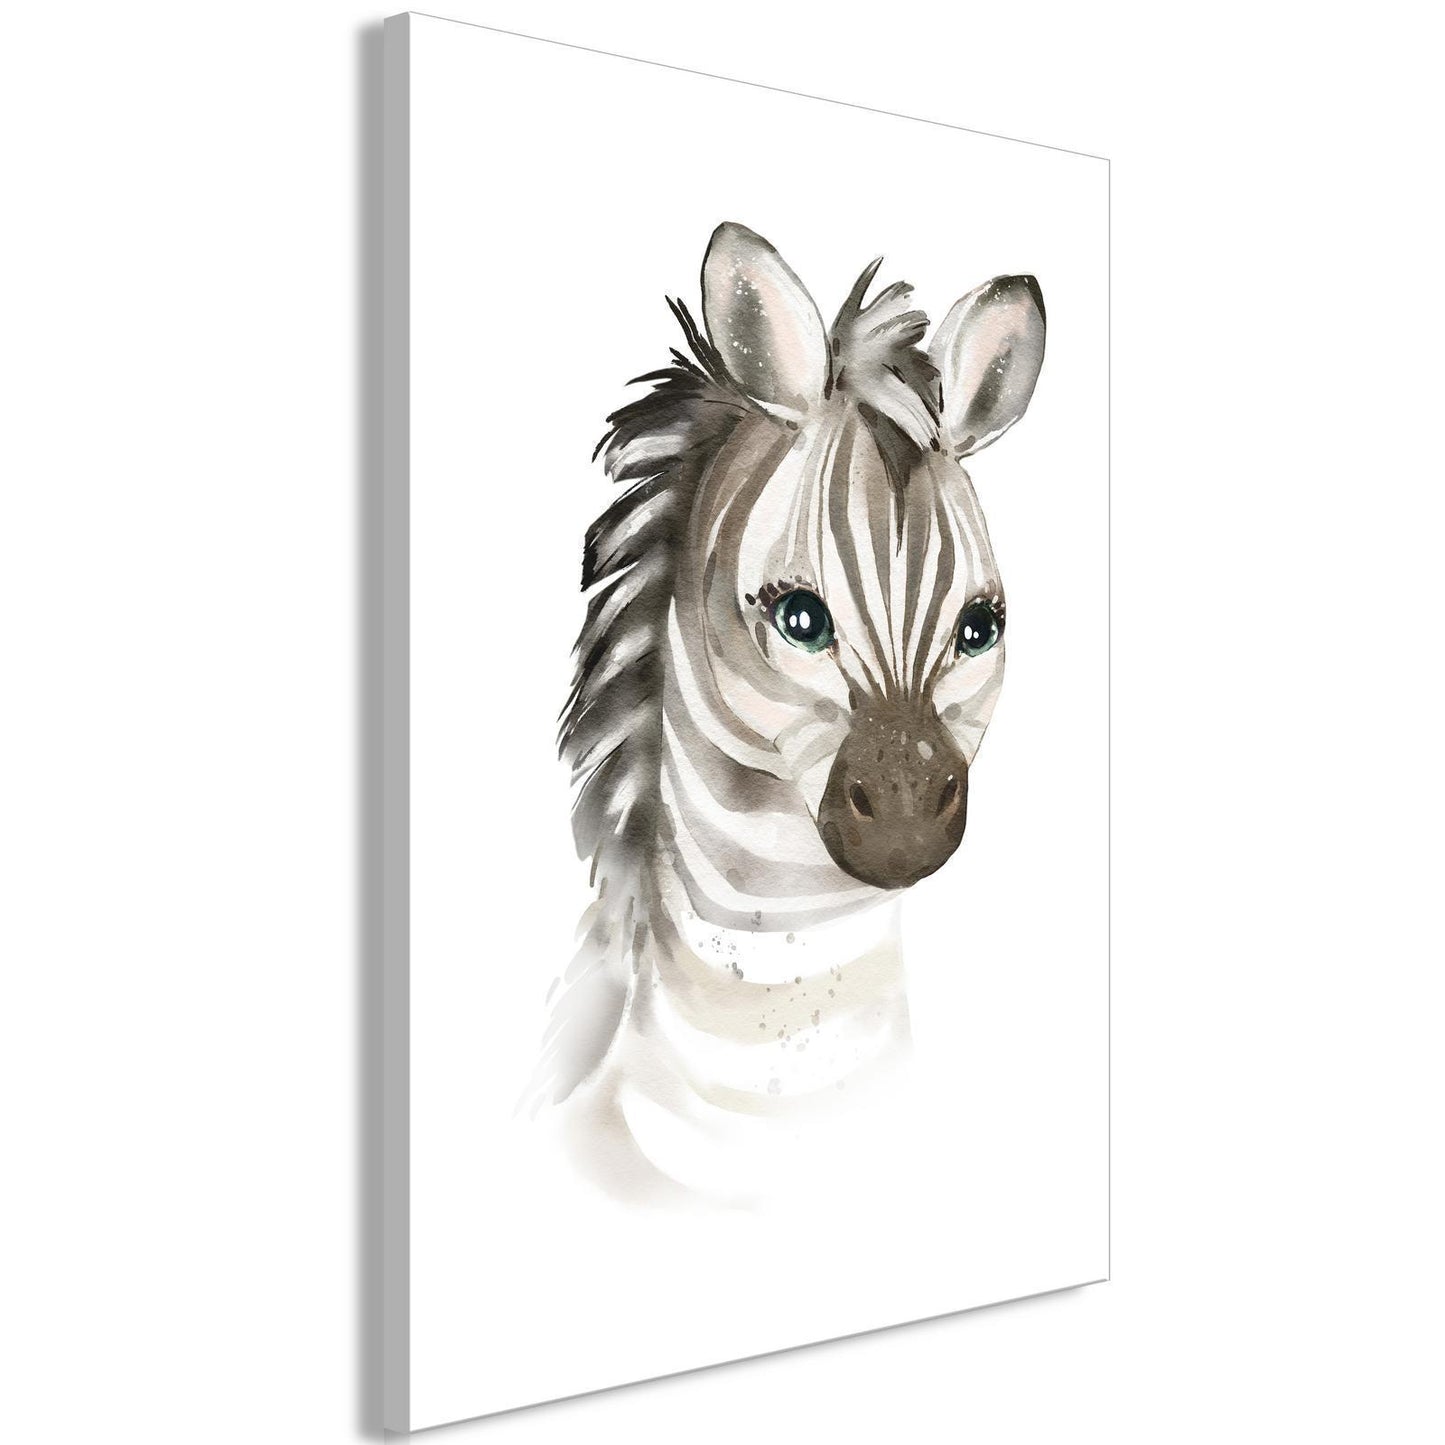 Schilderij - Little Zebra (1 Part) Vertical